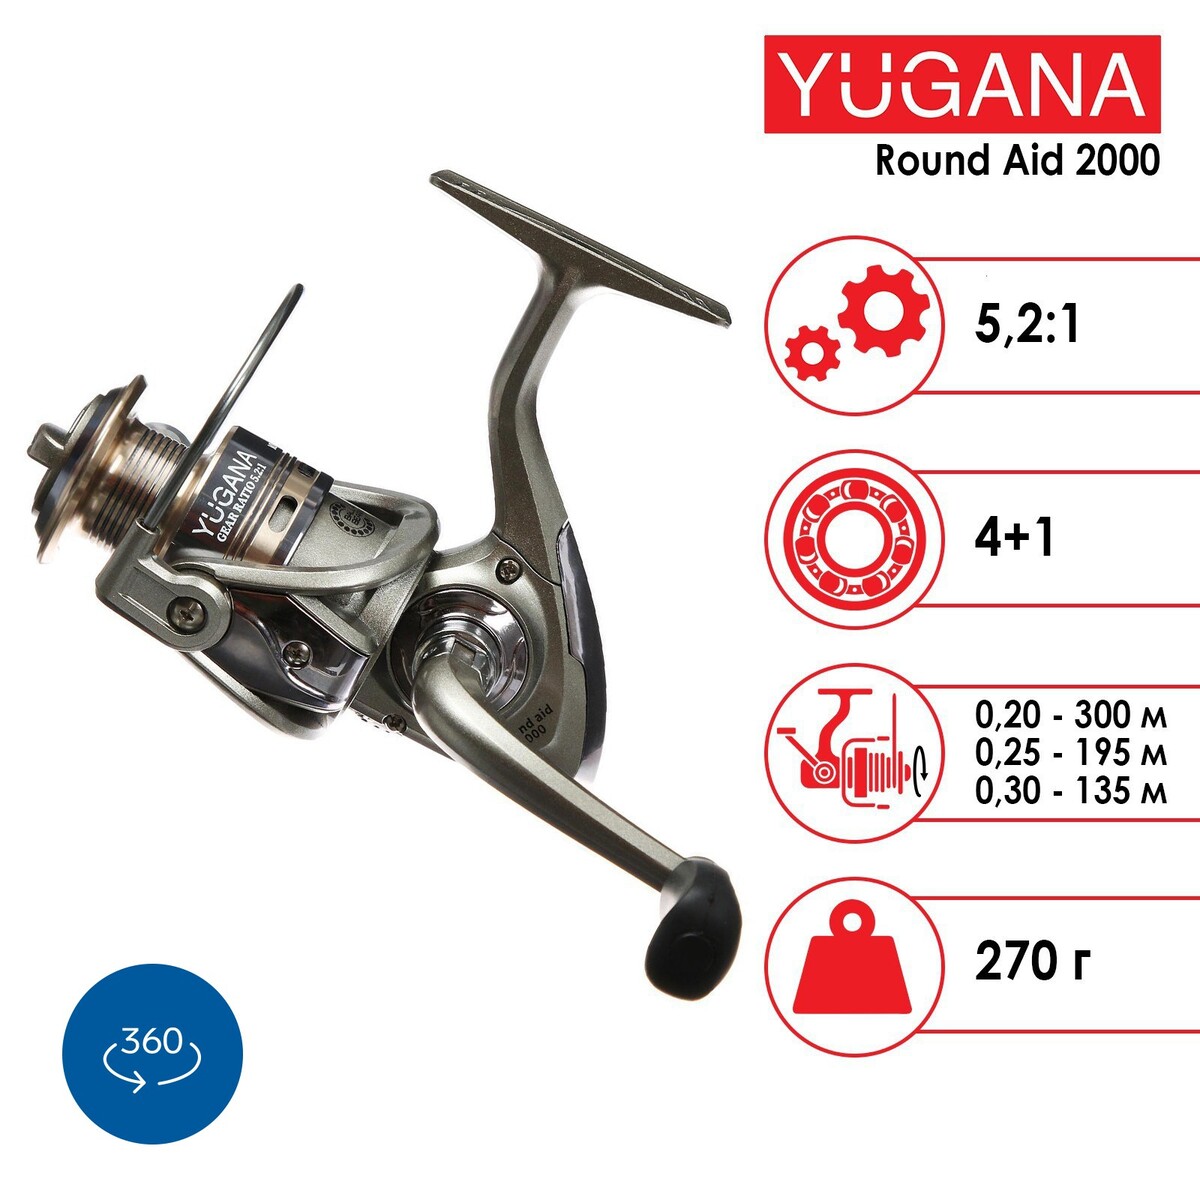  yugana round aid 2000 4+1 , 5.2:1